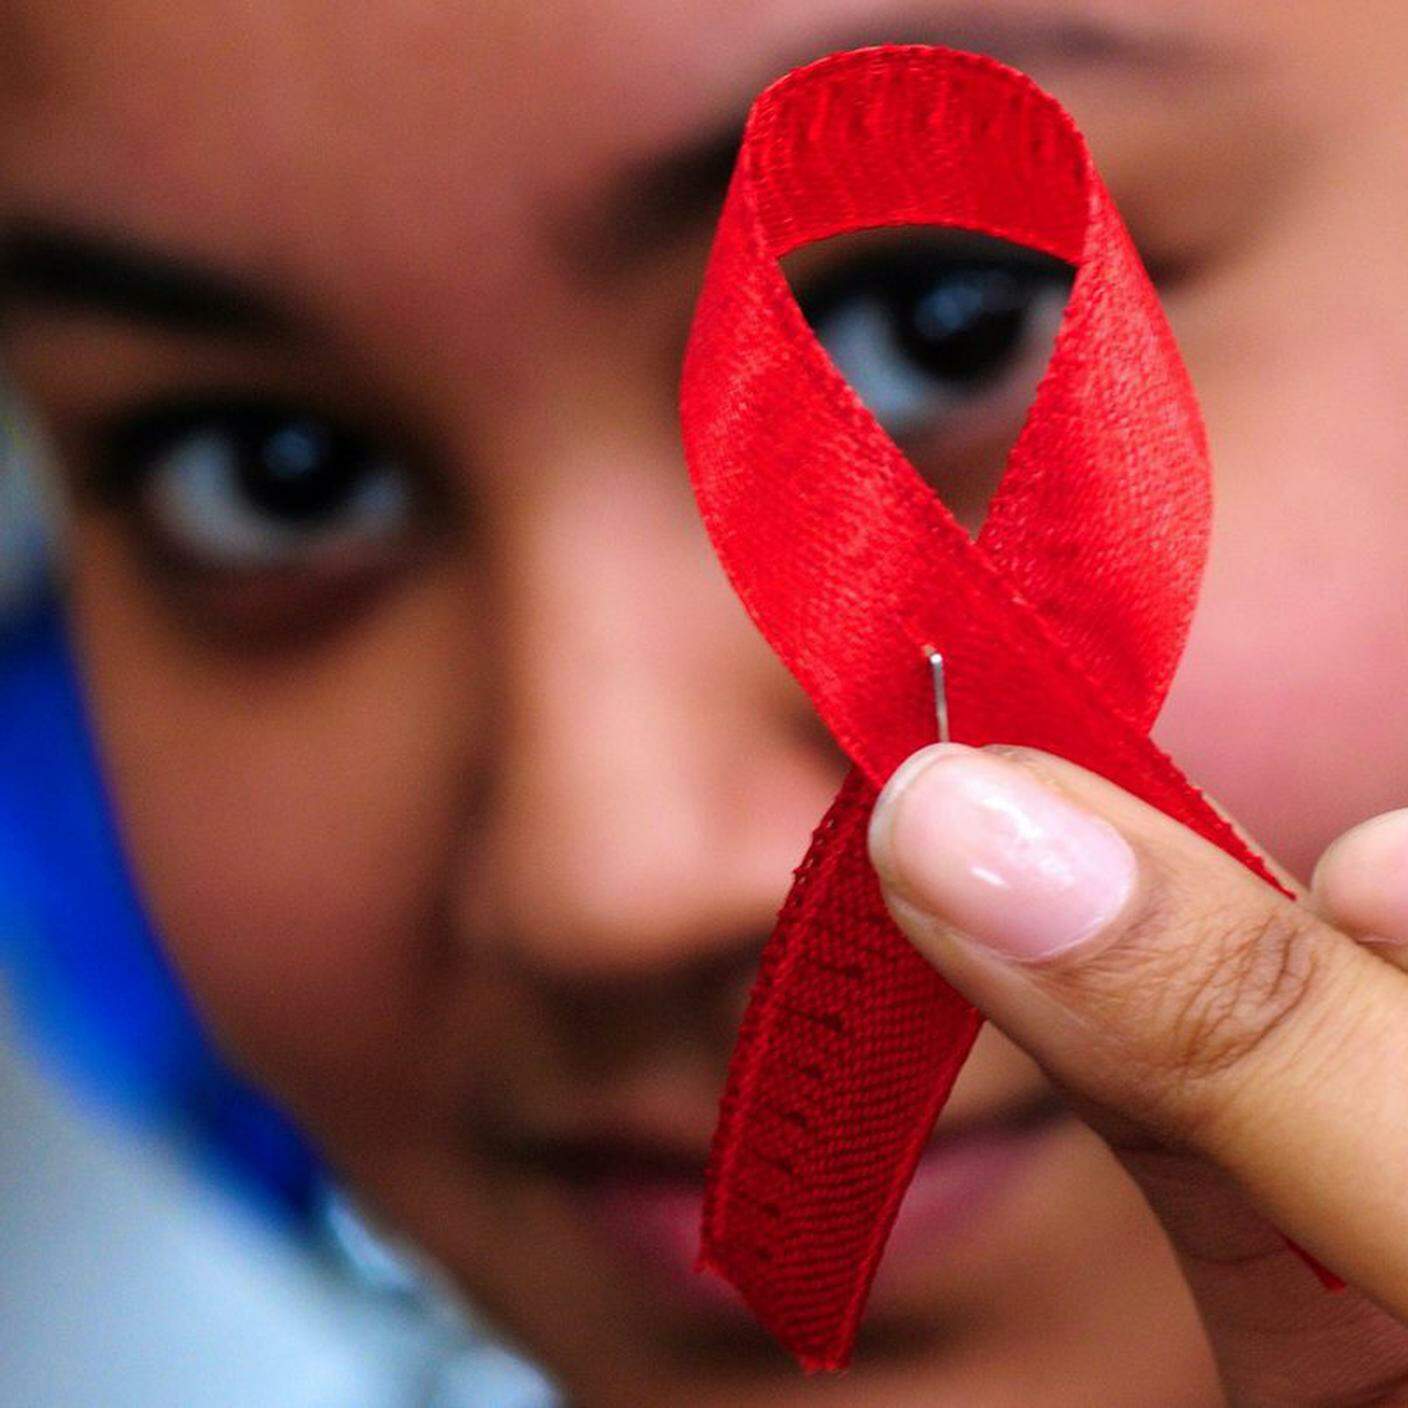 L'HIV continua a mietere vittime